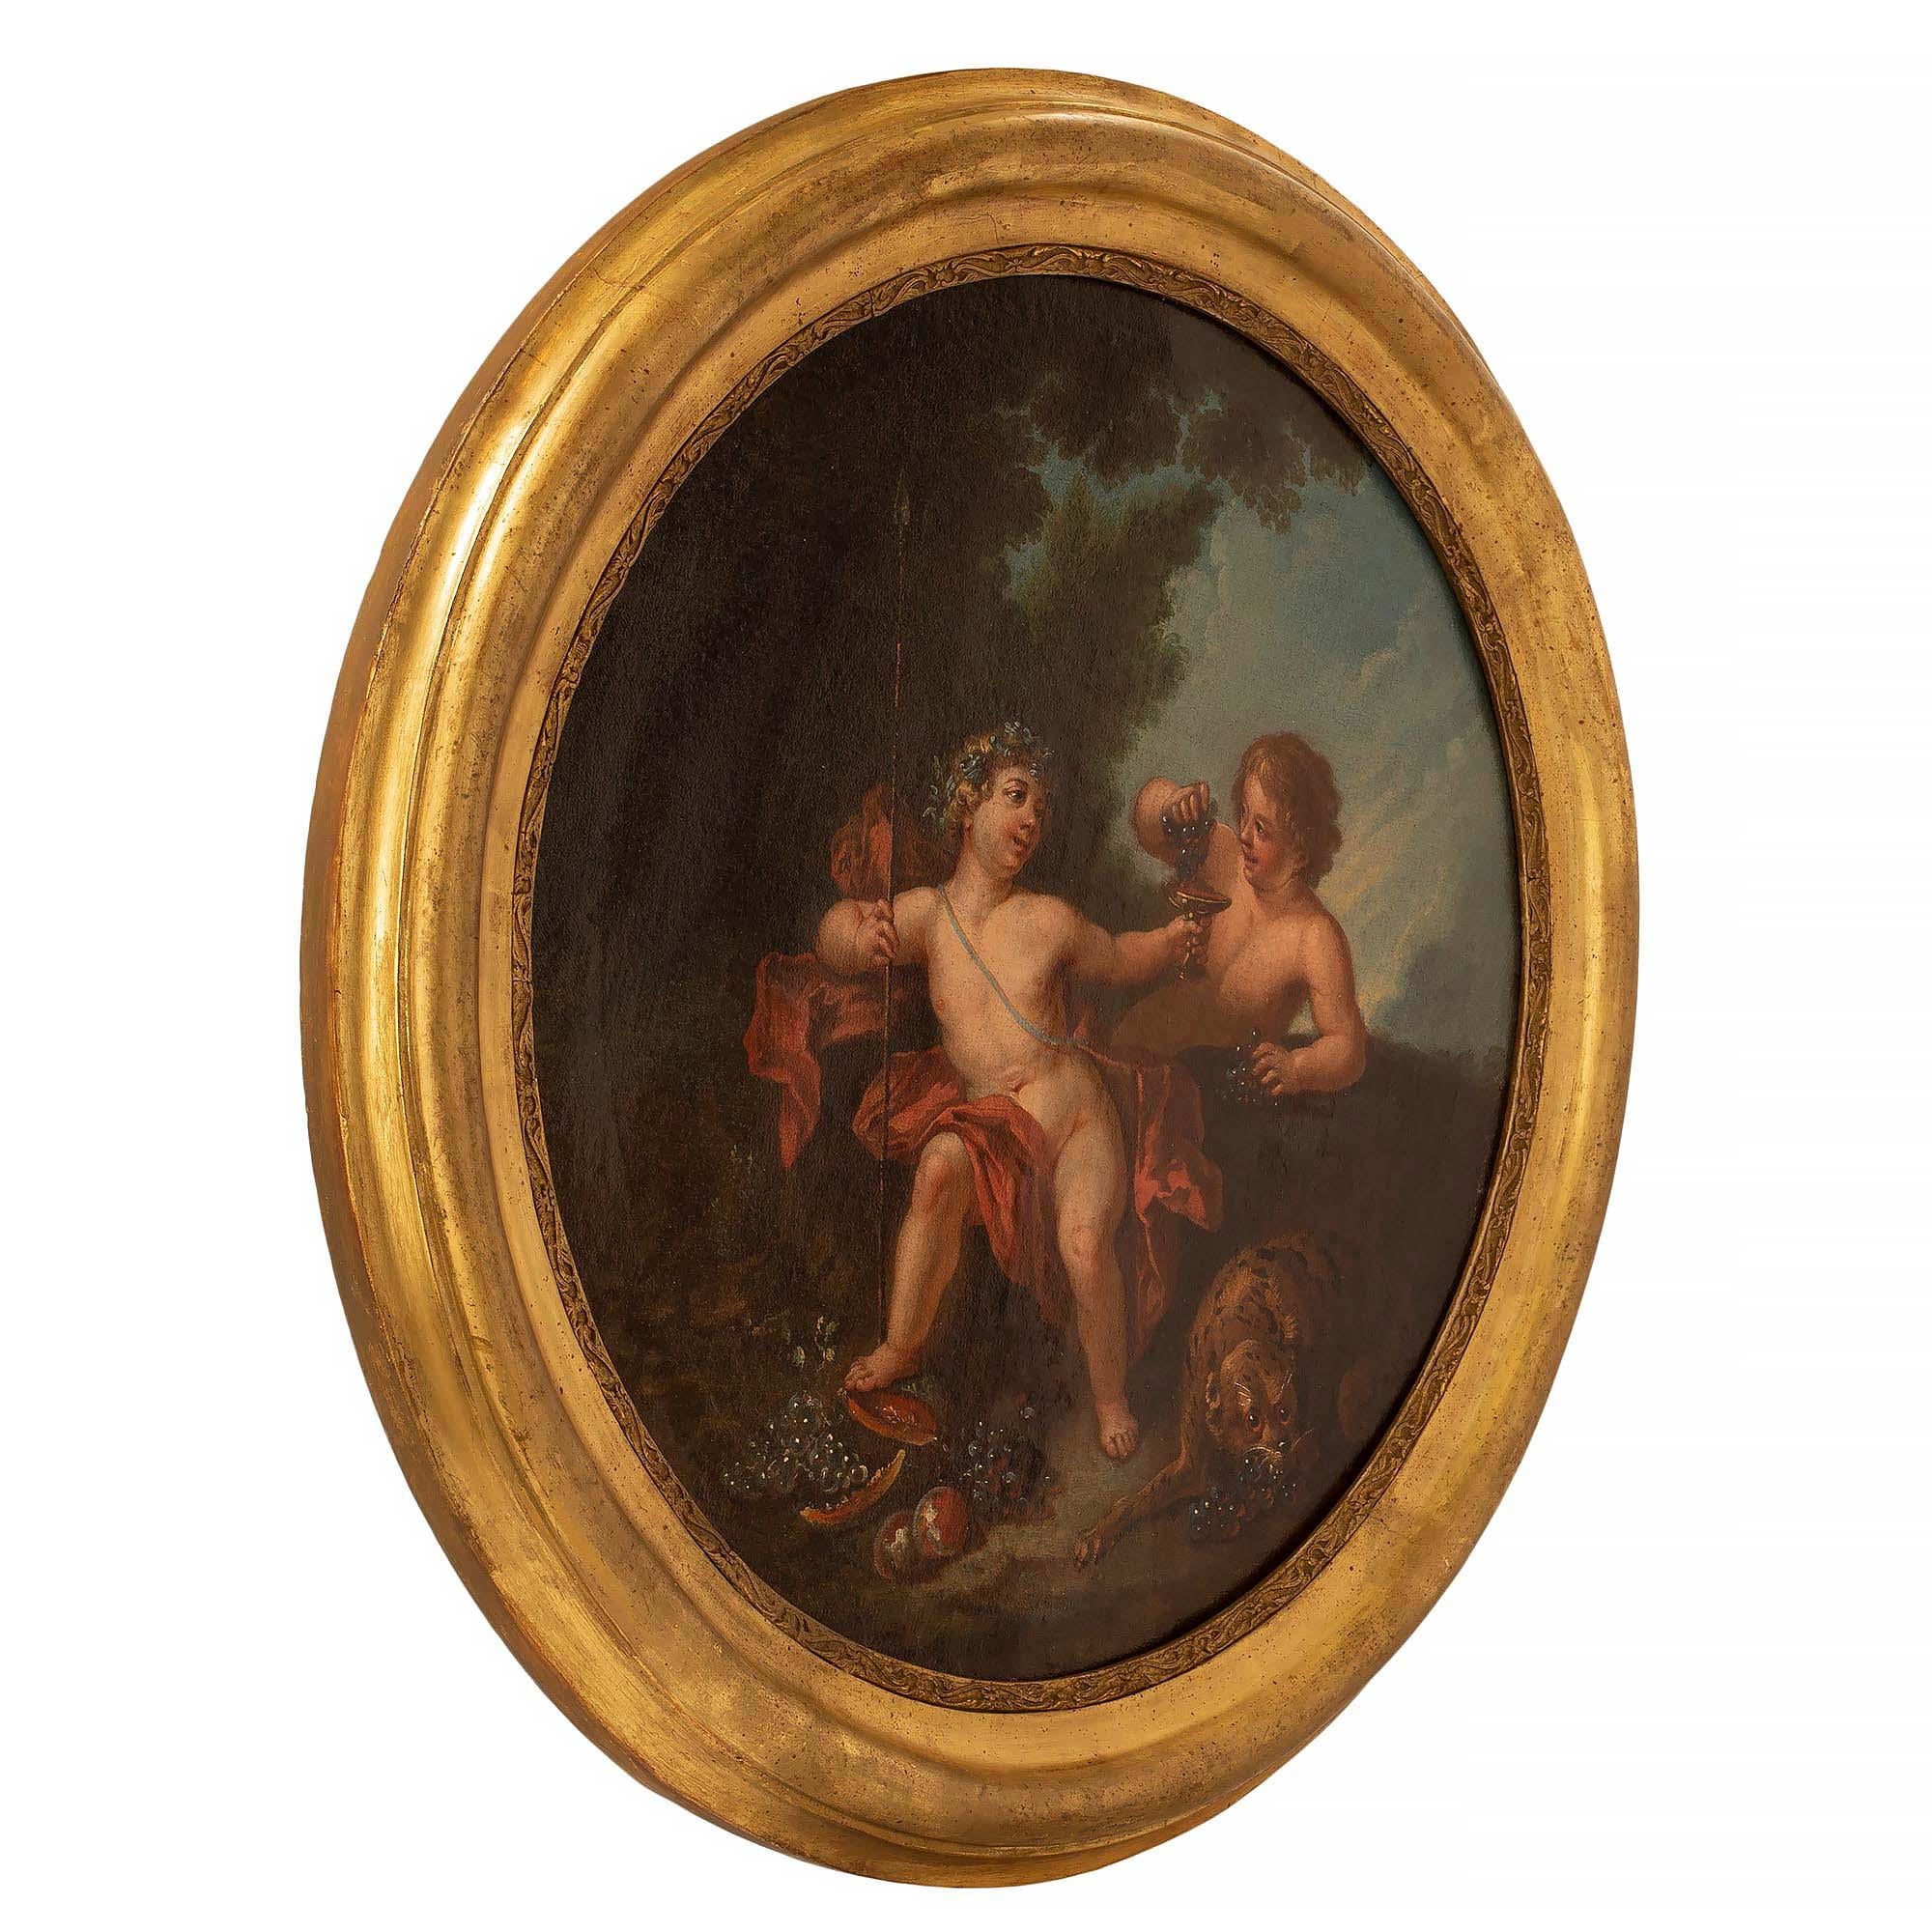 Une huile sur toile néoclassique italienne du XVIIIe siècle extrêmement charmante. Le tableau circulaire a conservé son cadre d'origine en bois doré, avec de magnifiques motifs tachetés et une bordure feuillagée finement sculptée. La peinture